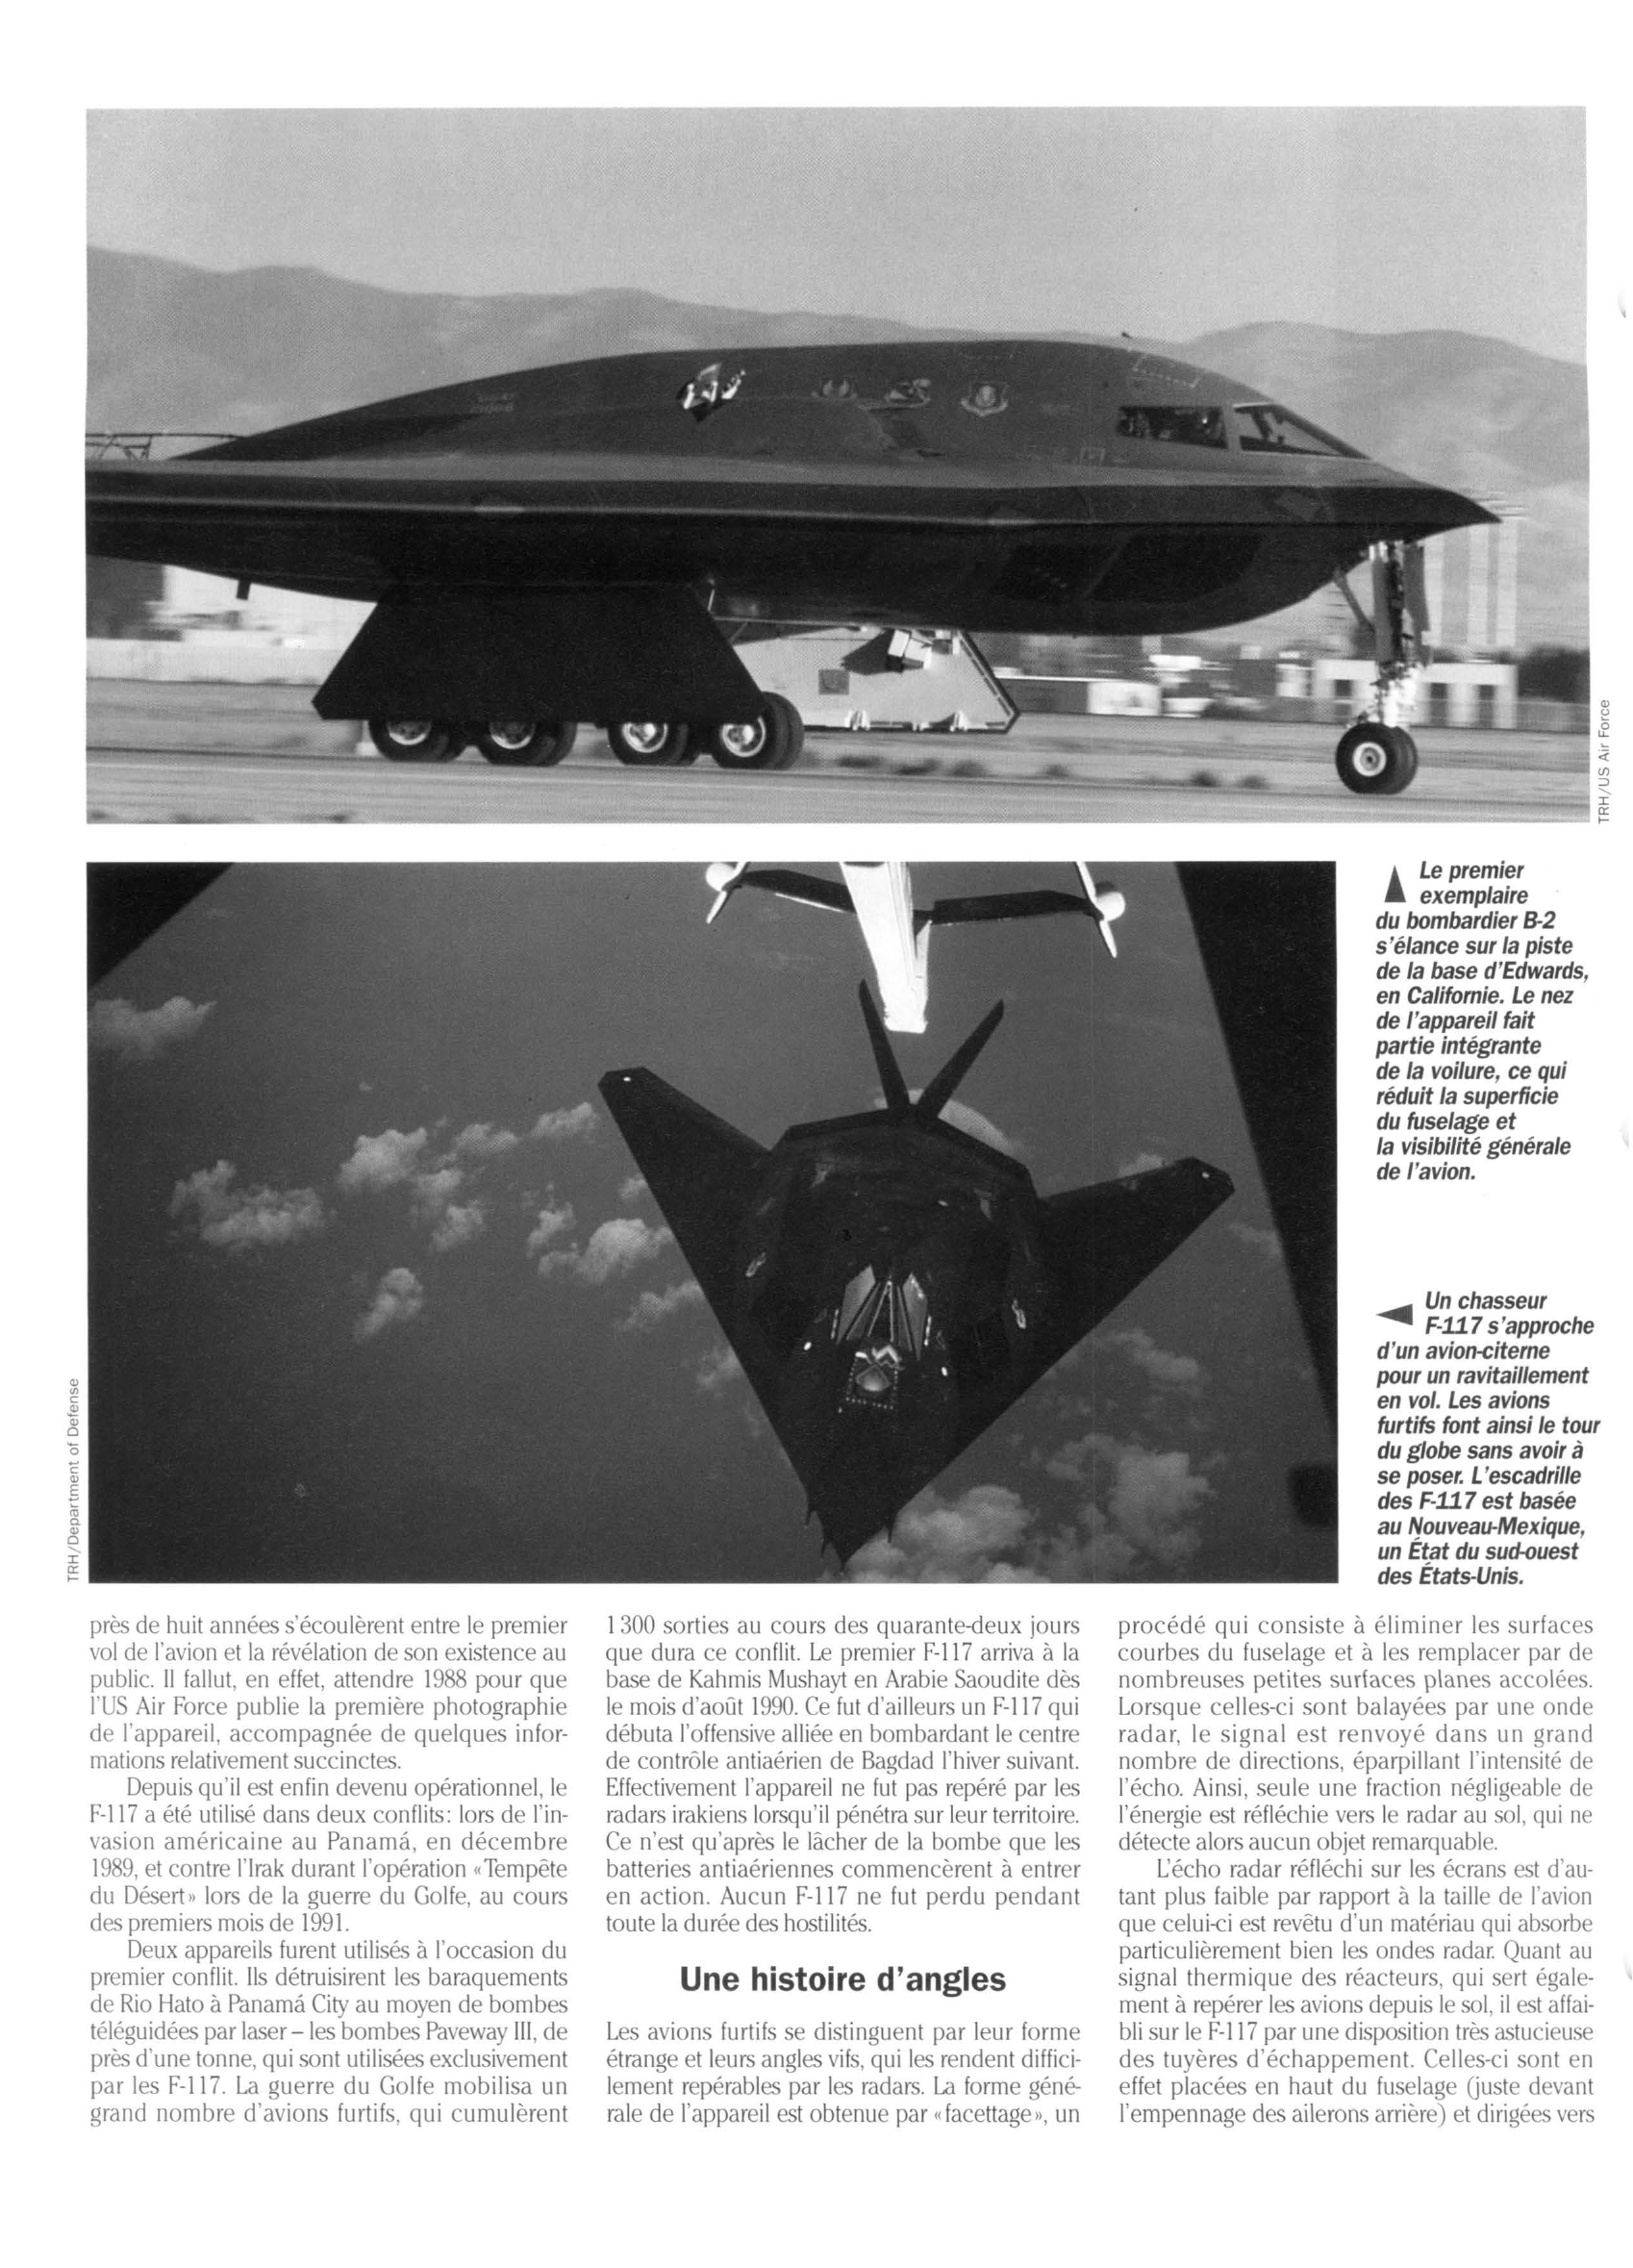 Prévisualisation du document Le Bombardier invisible F-117 (avion de guerre)